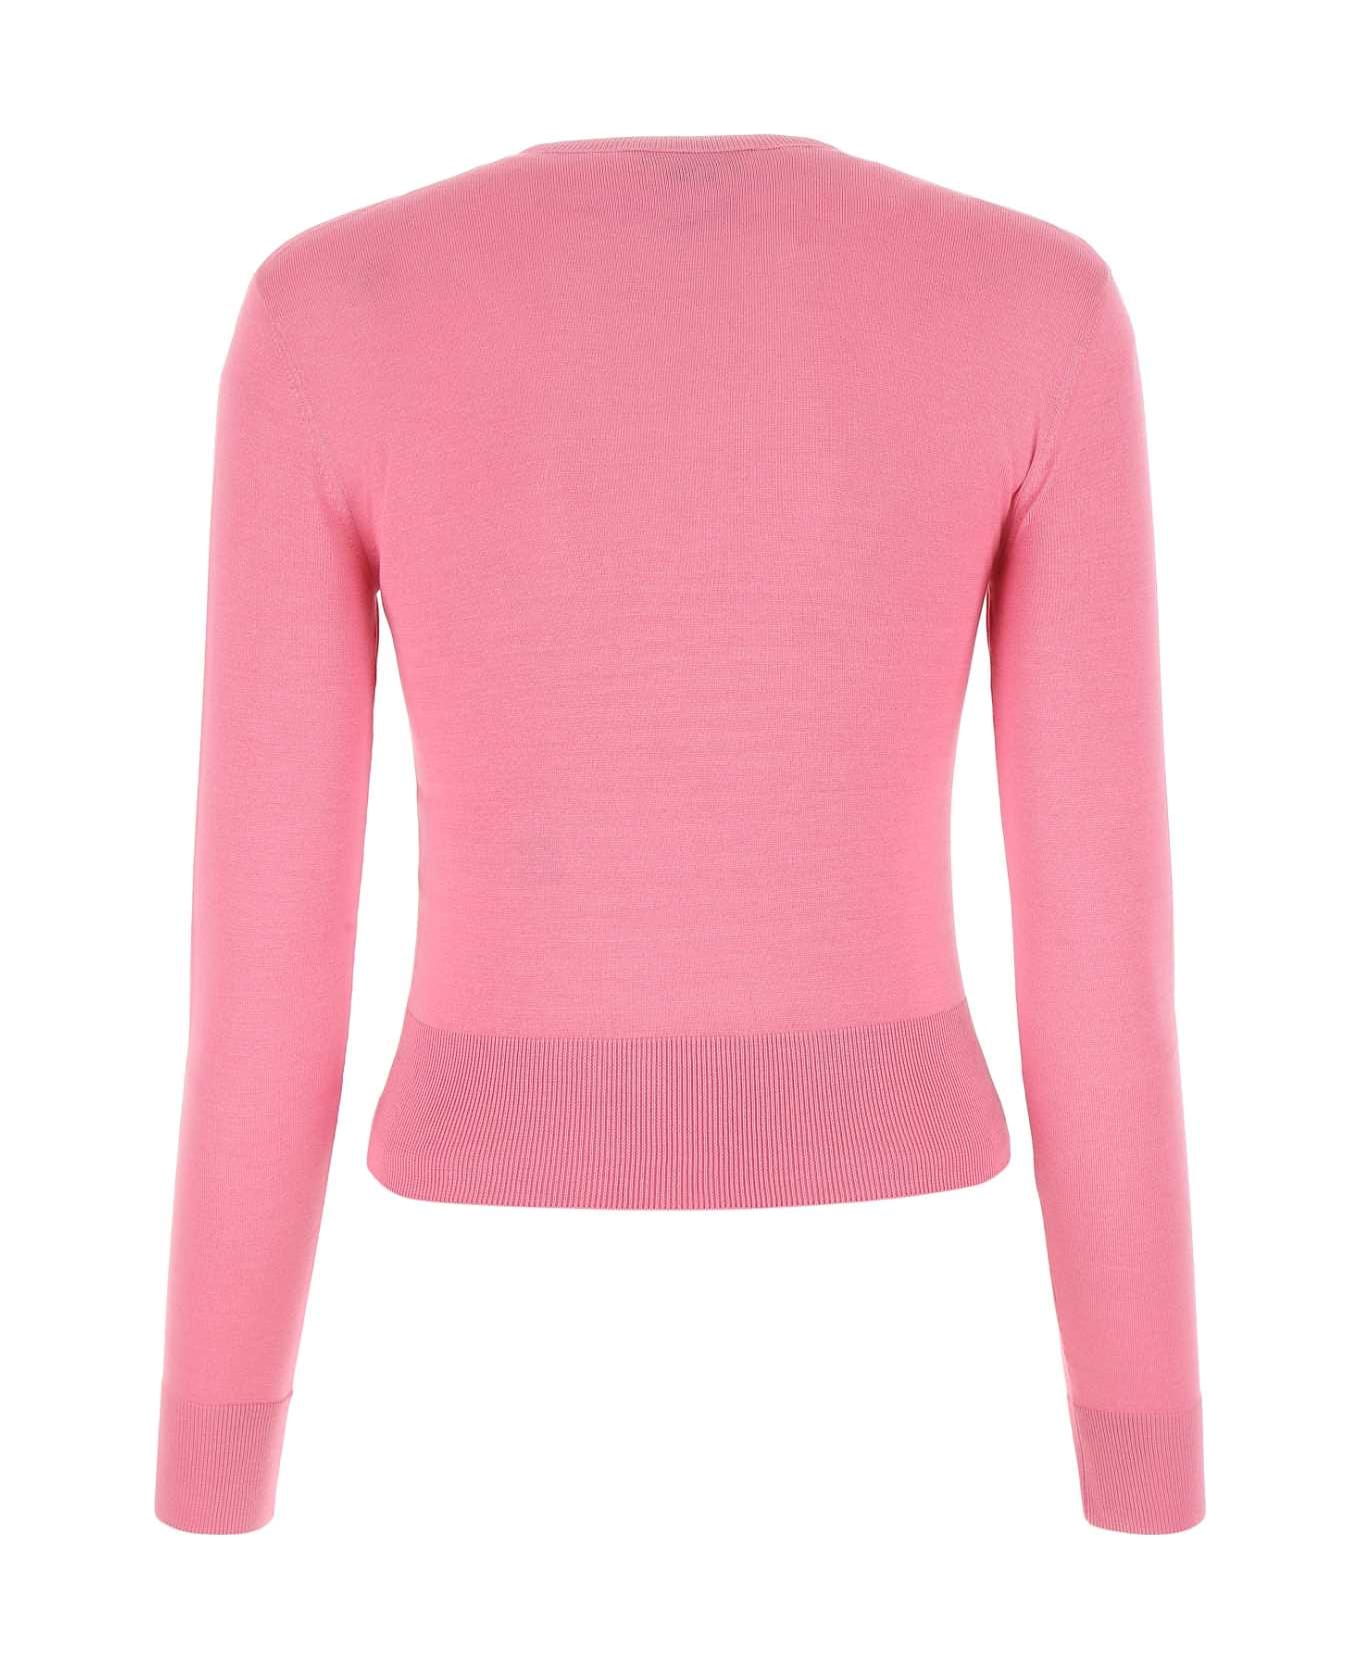 Alexander McQueen Silk Blend Sweater - 5003